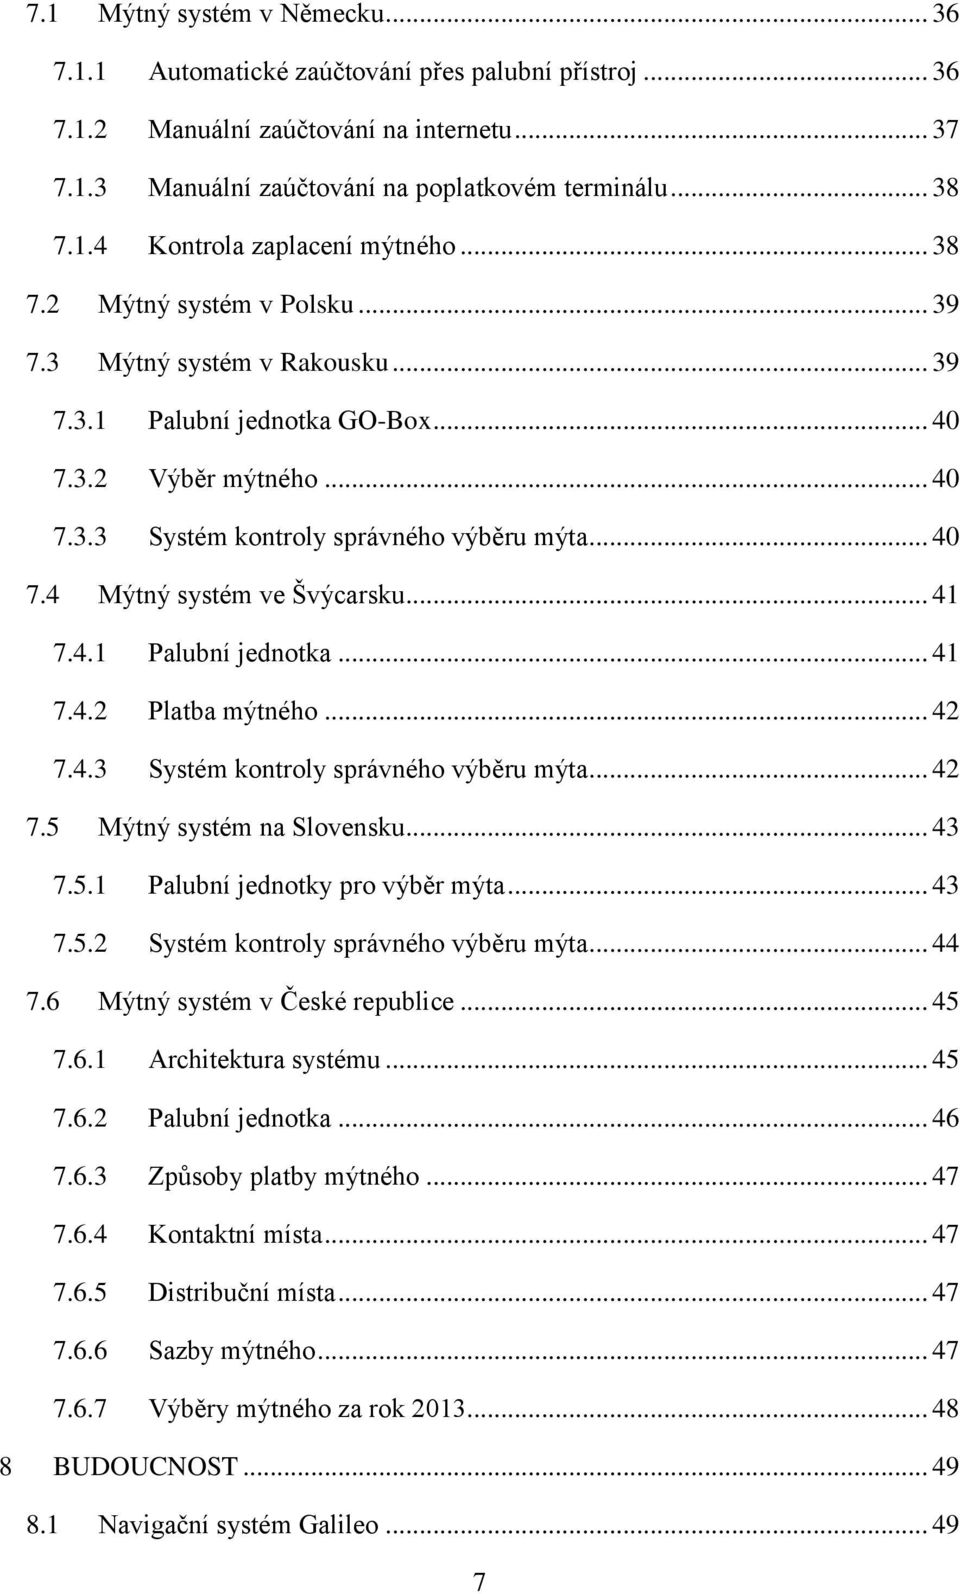 .. 41 7.4.1 Palubní jednotka... 41 7.4.2 Platba mýtného... 42 7.4.3 Systém kontroly správného výběru mýta... 42 7.5 Mýtný systém na Slovensku... 43 7.5.1 Palubní jednotky pro výběr mýta... 43 7.5.2 Systém kontroly správného výběru mýta.